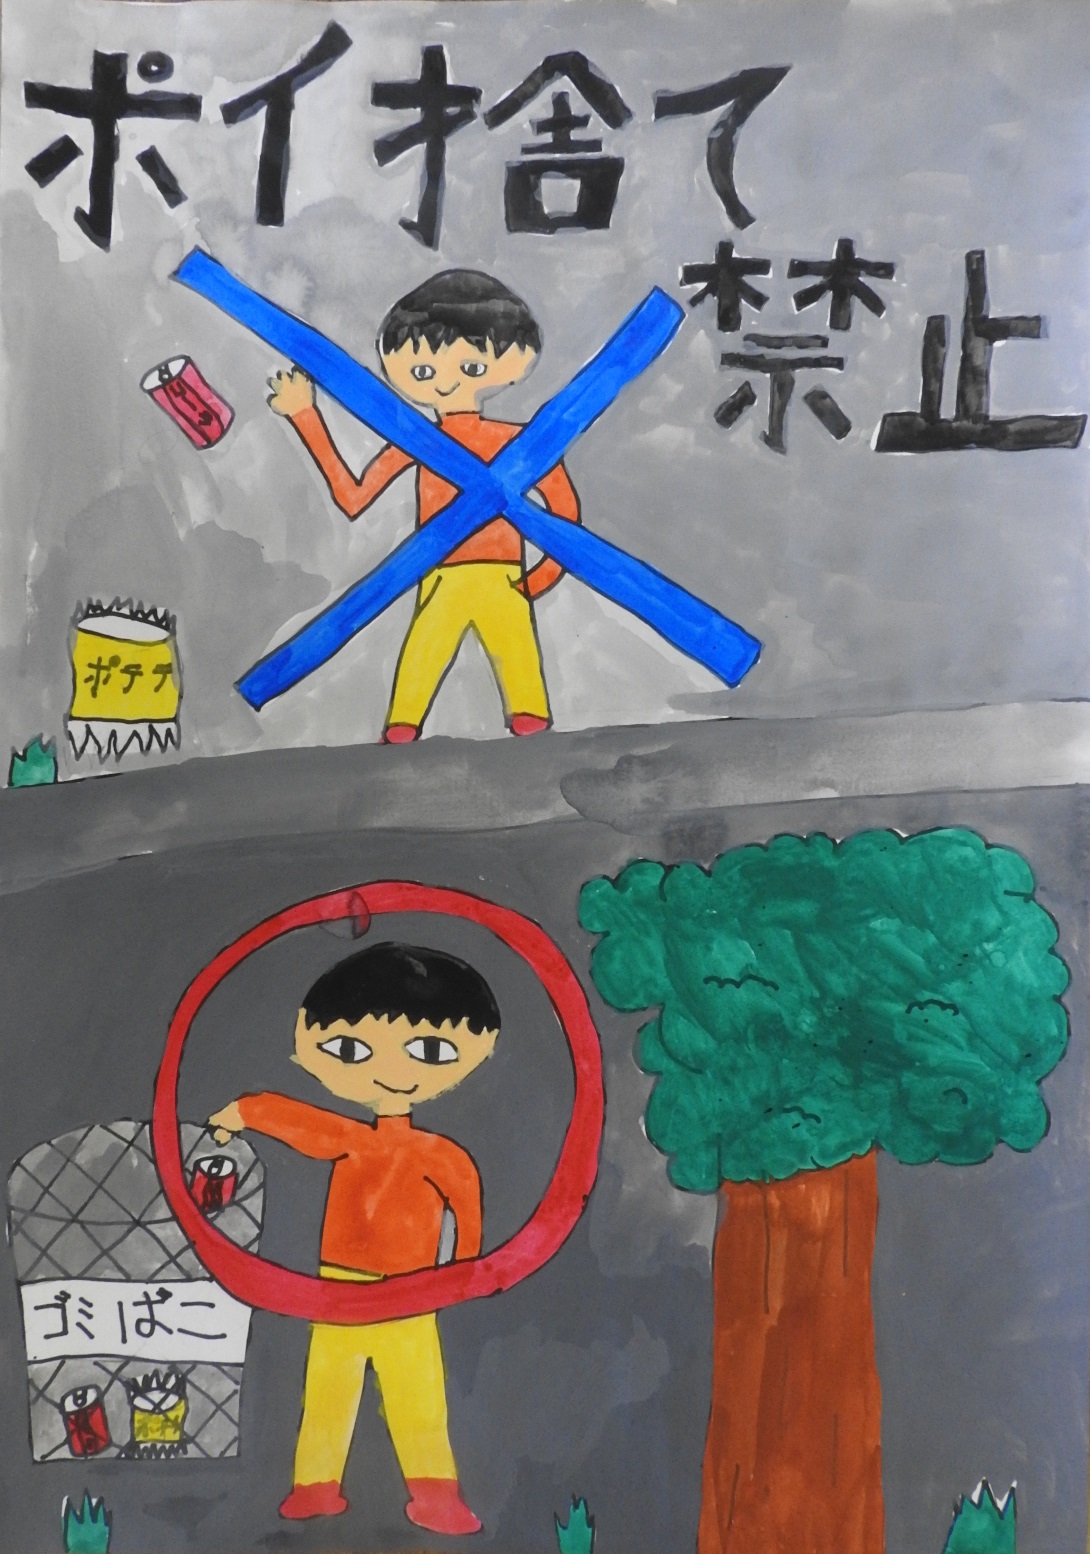 青い色のバツが付いたポイ捨てする男の子と、赤色の丸が付いたゴミ箱にごみを入れる男の子の絵に「ポイ捨て禁止」と書かれたポスター